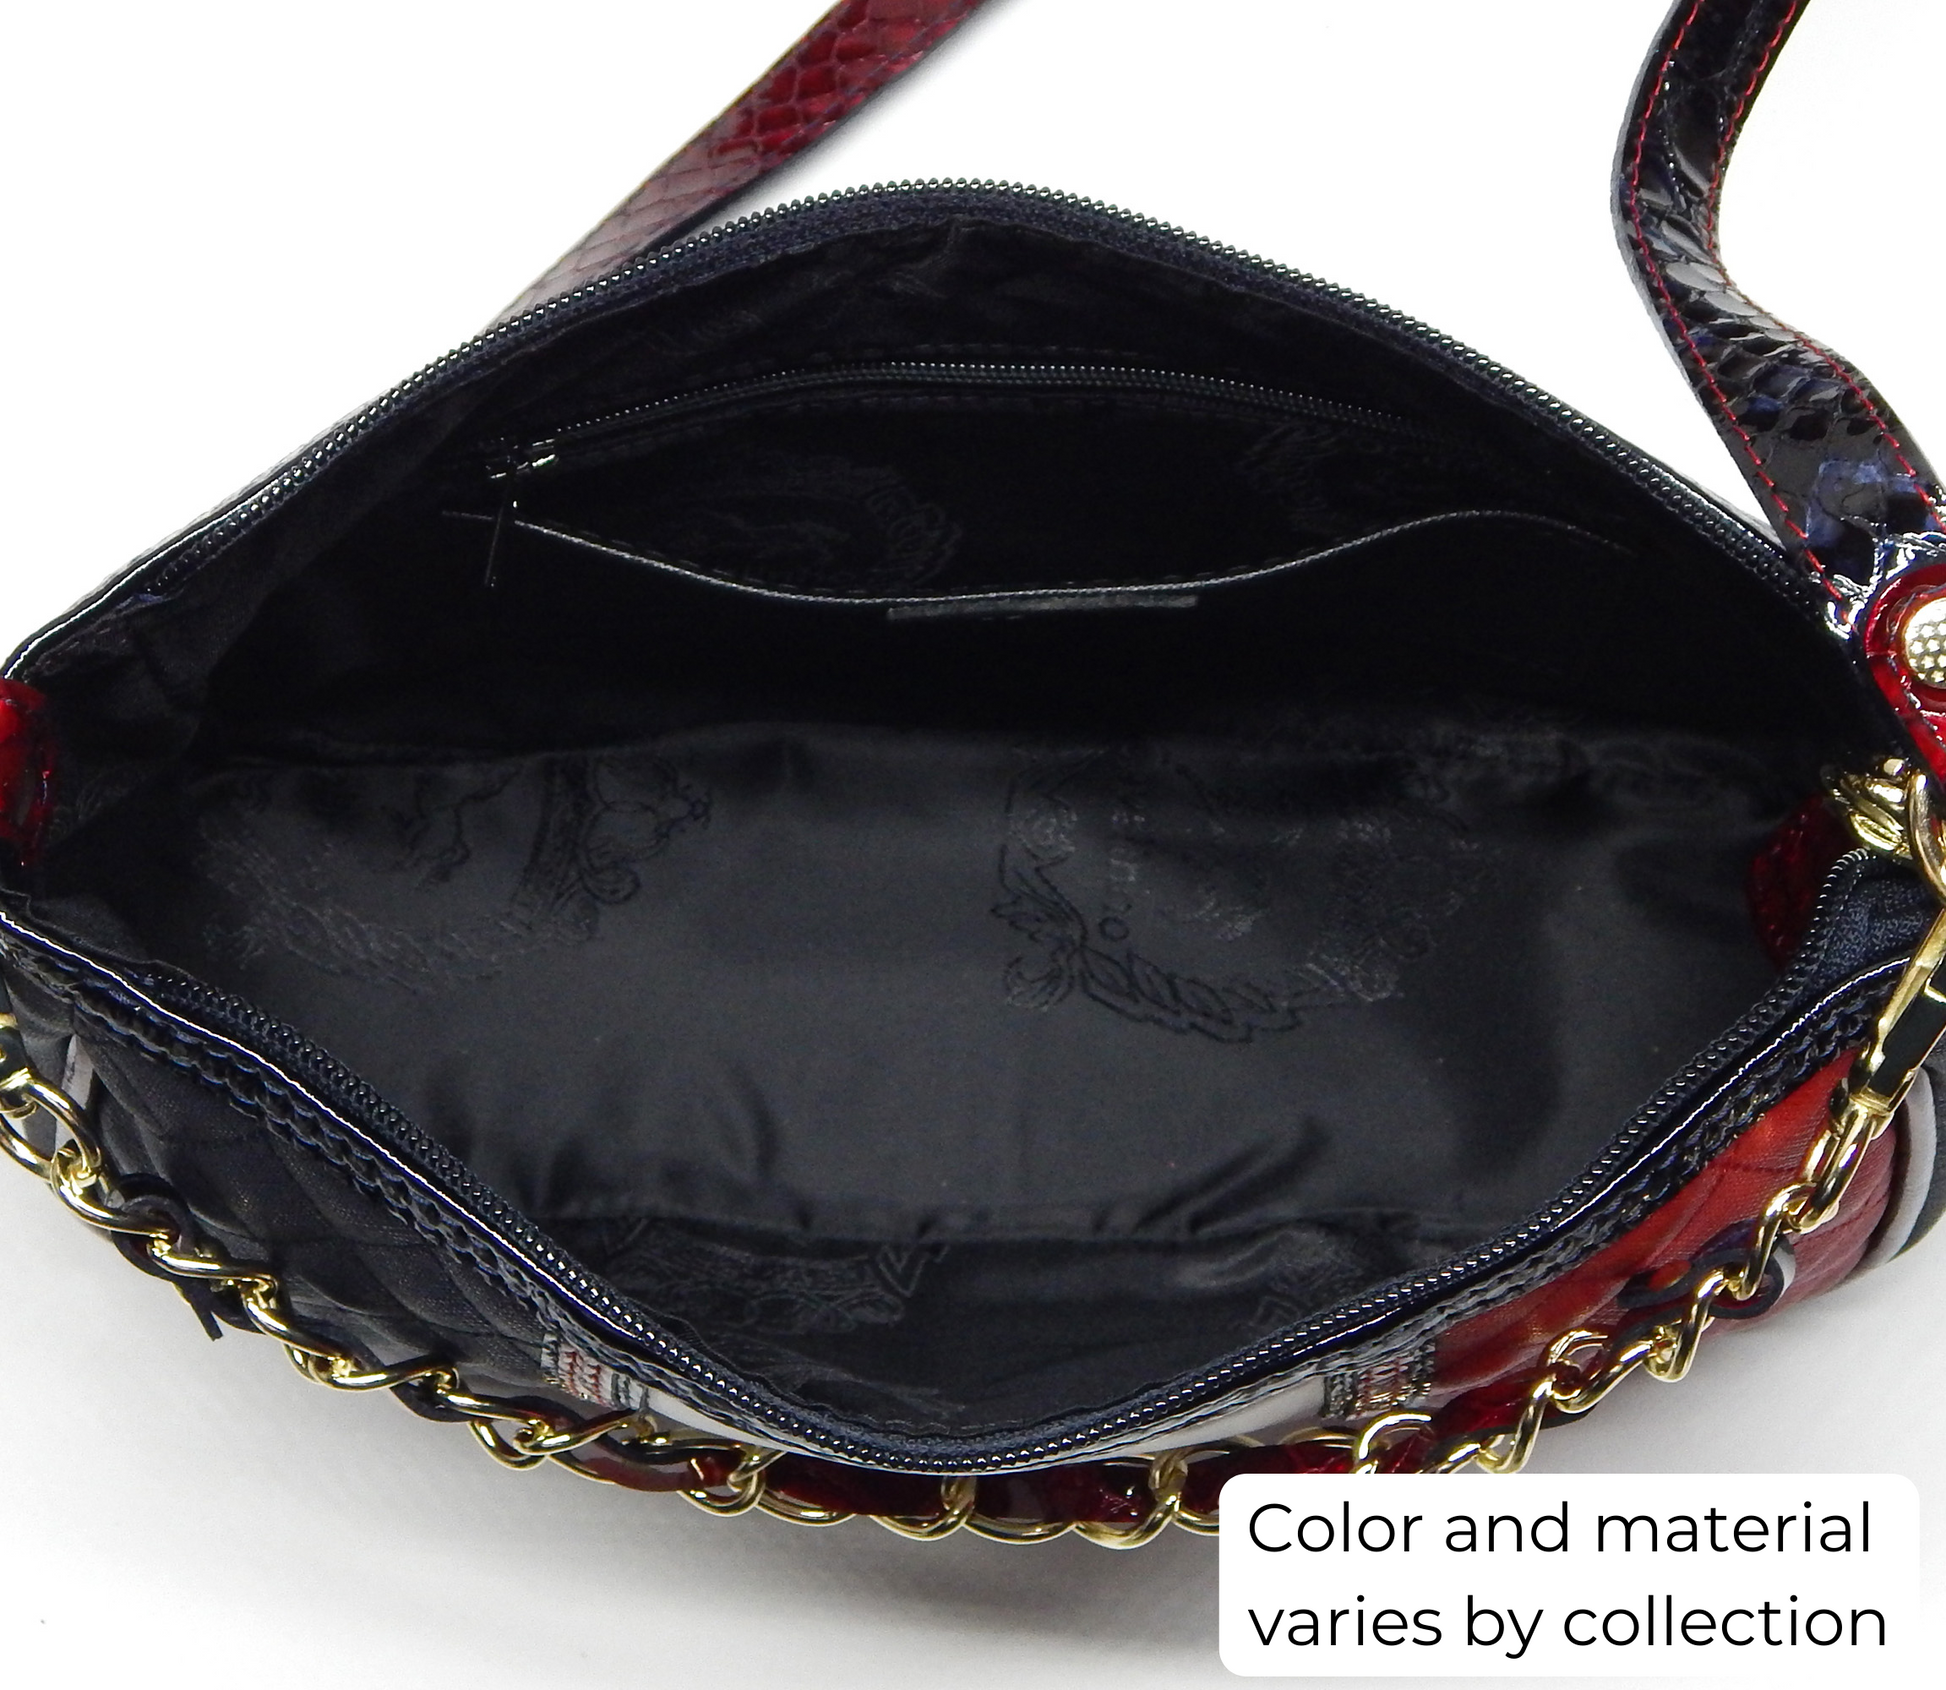 #color_ Black | Cavalinho Charming Crossbody Bag - Black - inside_0402_7c8f0bdd-2005-4a61-89d5-90ec7bf4e07a